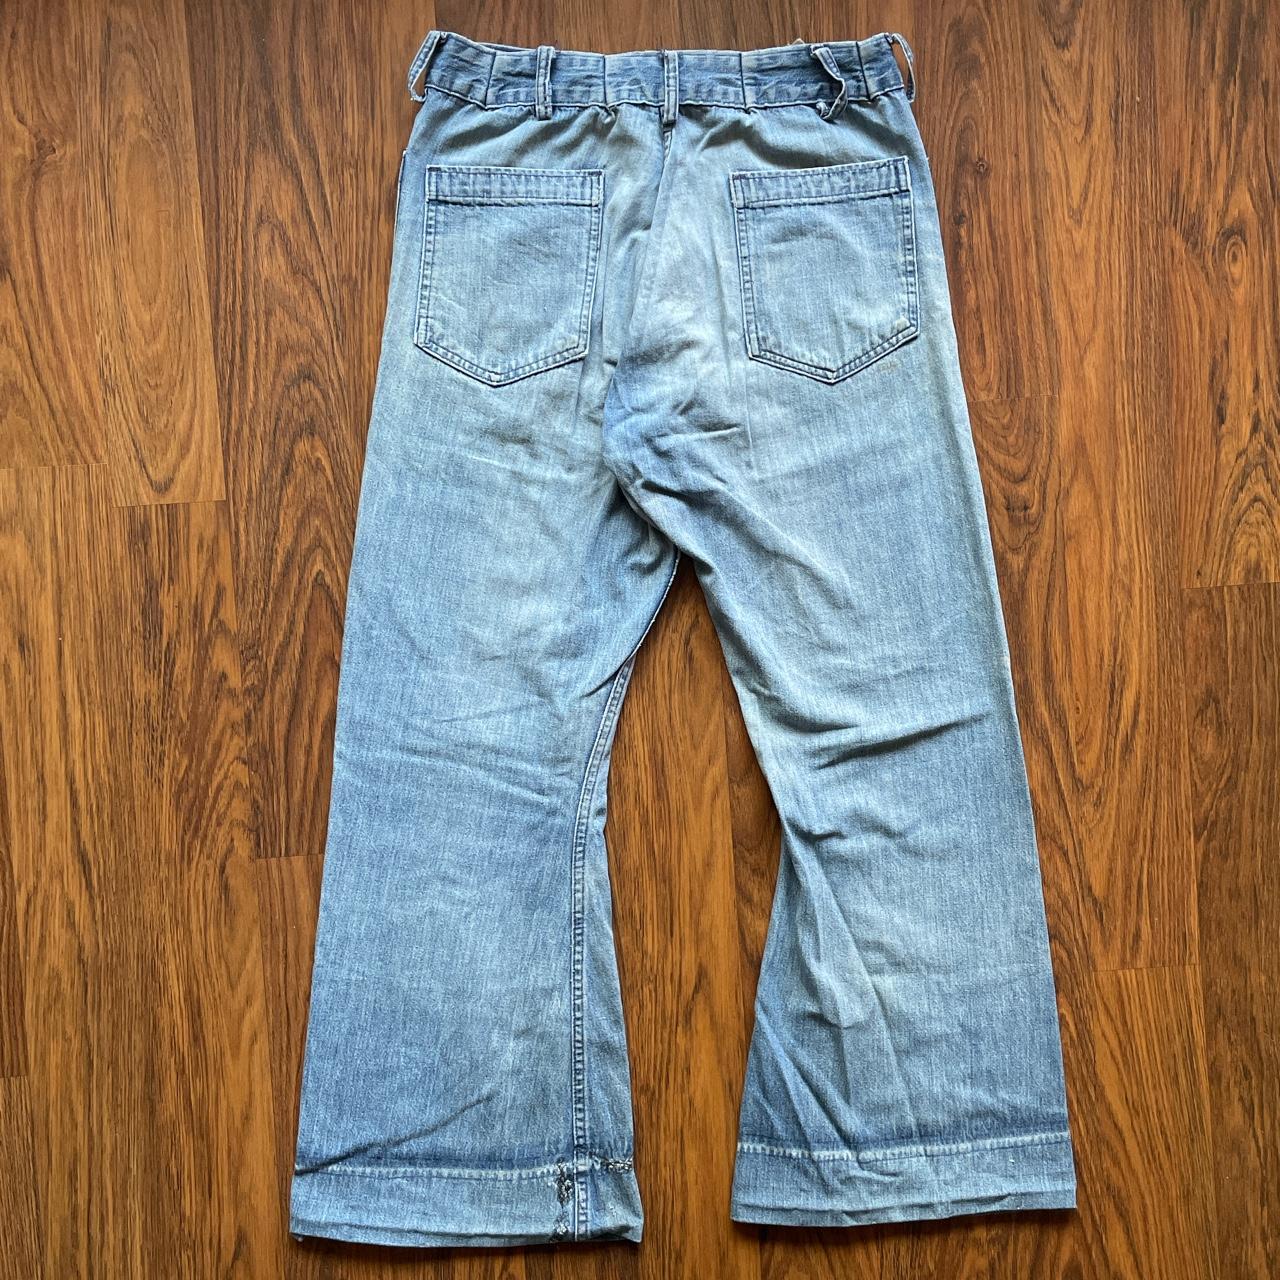 Vintage SeaFarer sailor jeans (Size) made in the USA... - Depop